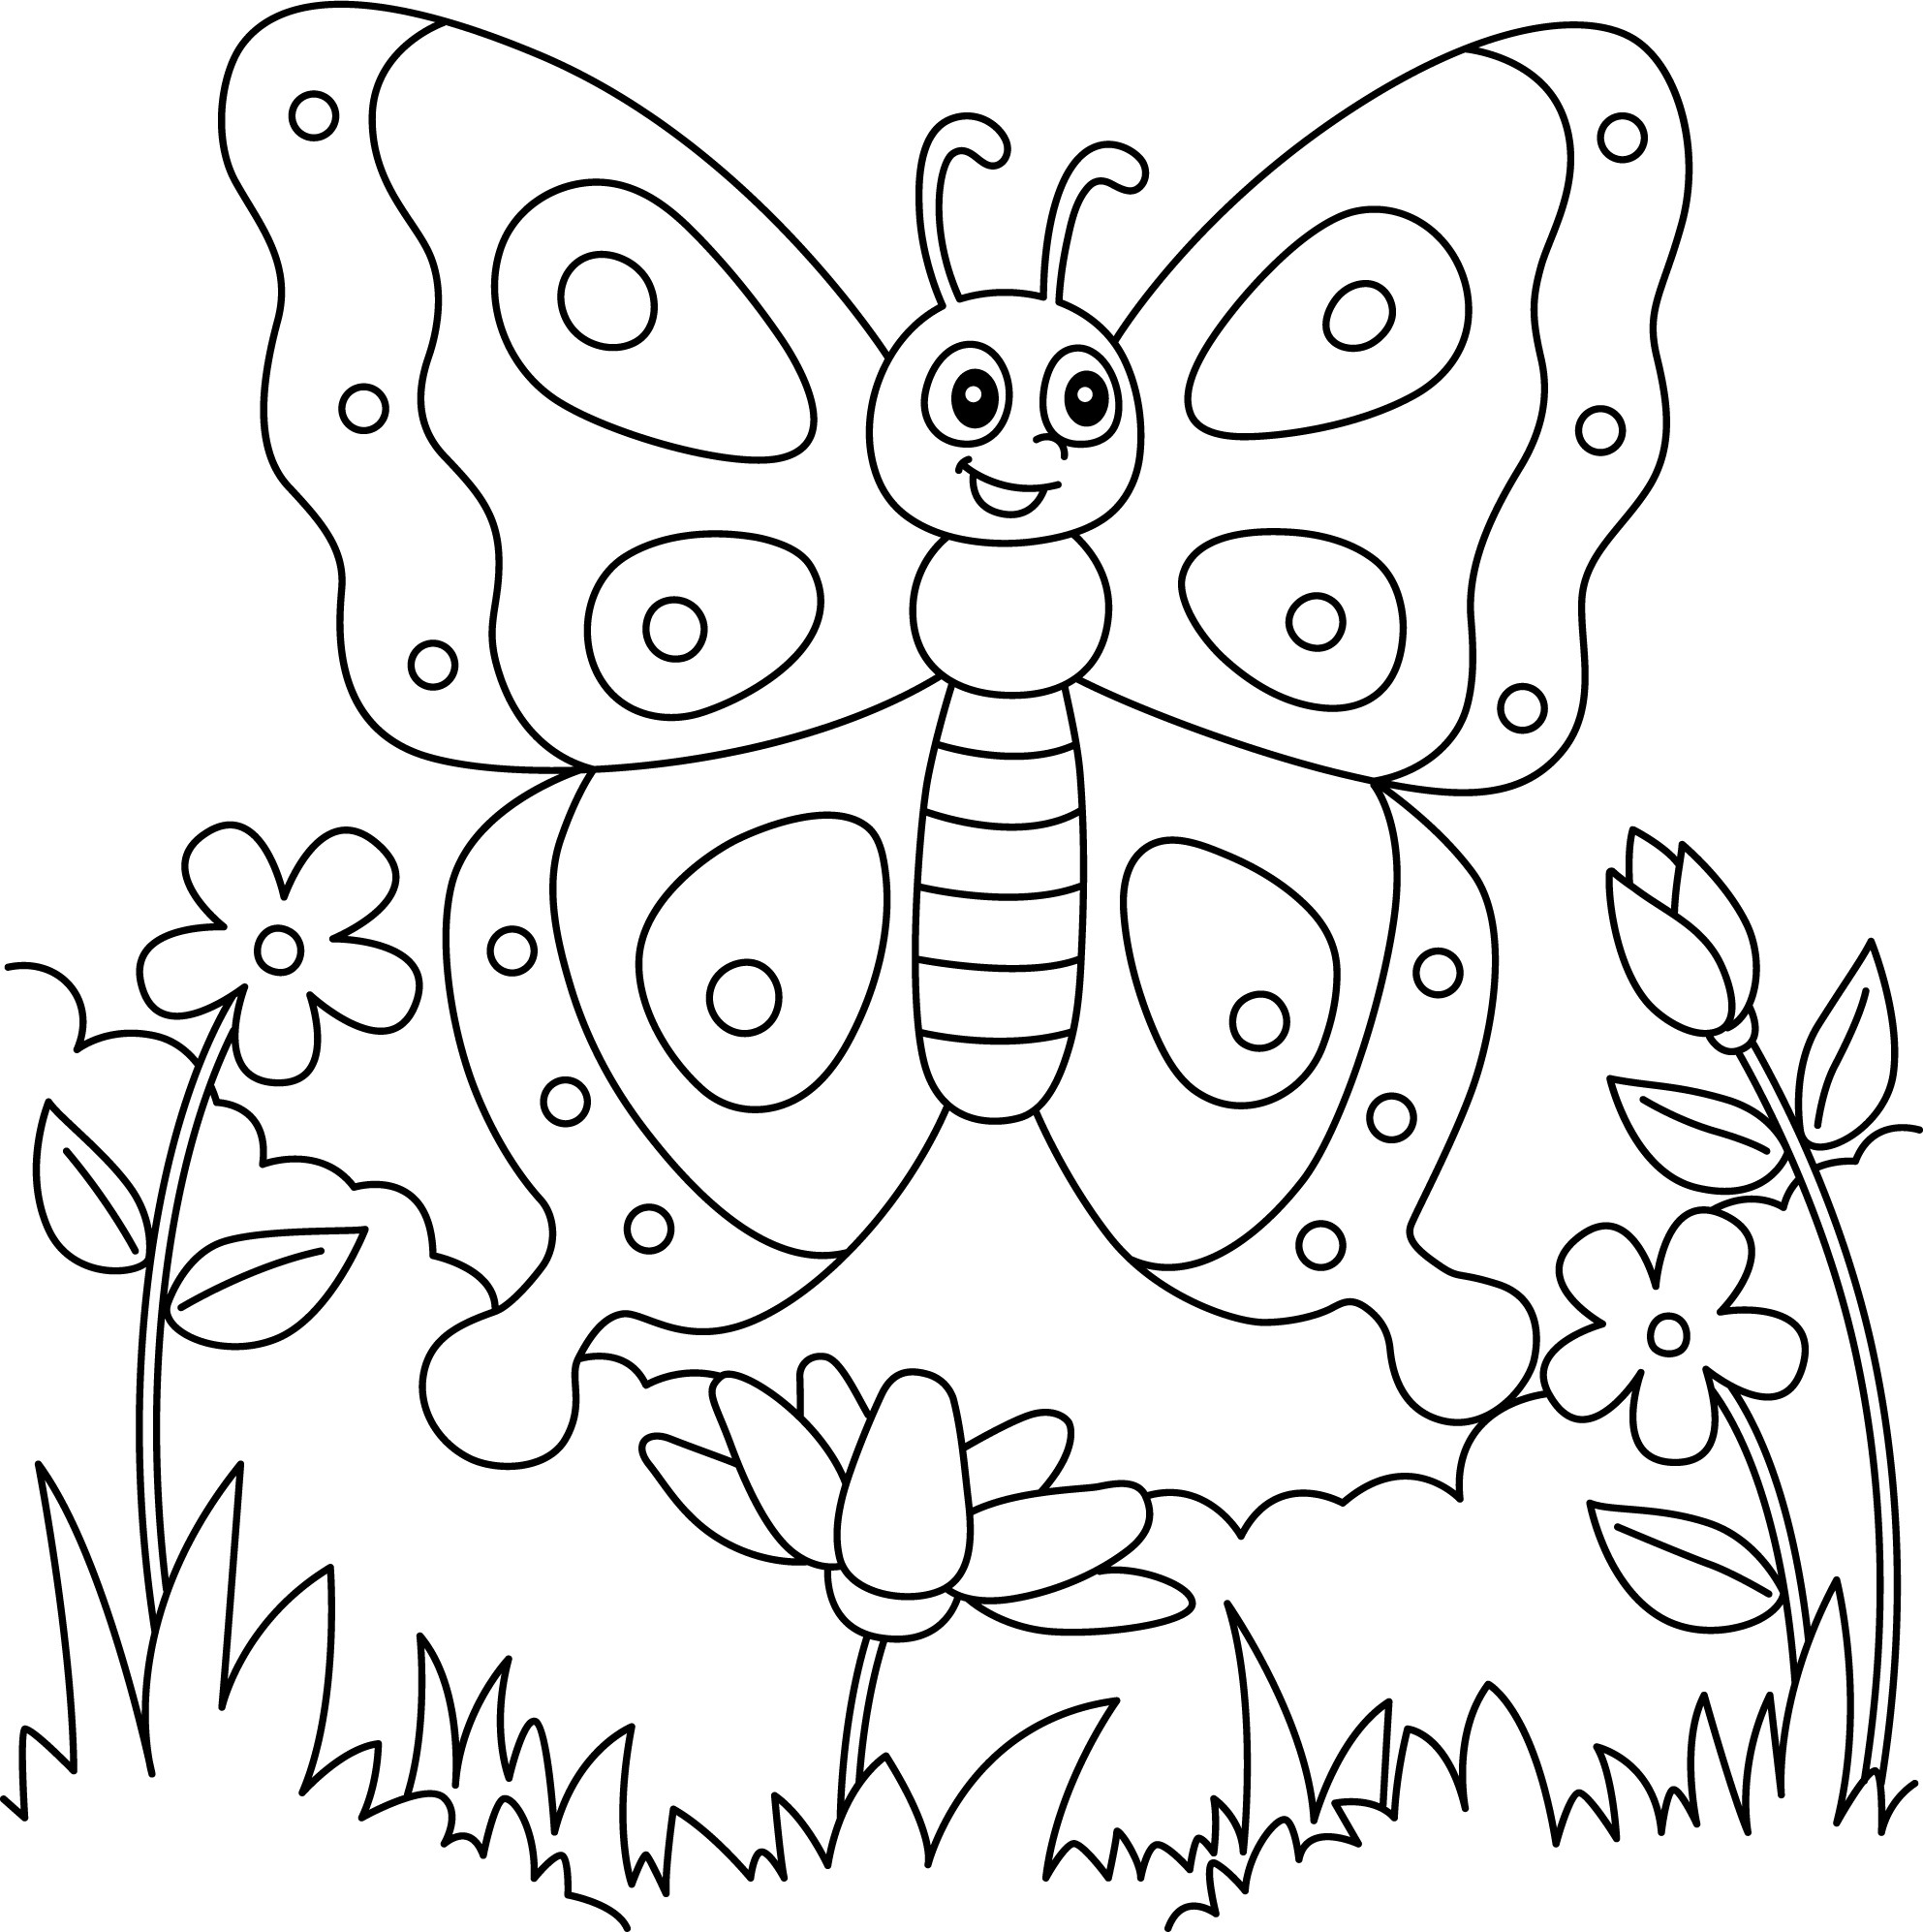 Раскраска для детей: бабочка на цветке